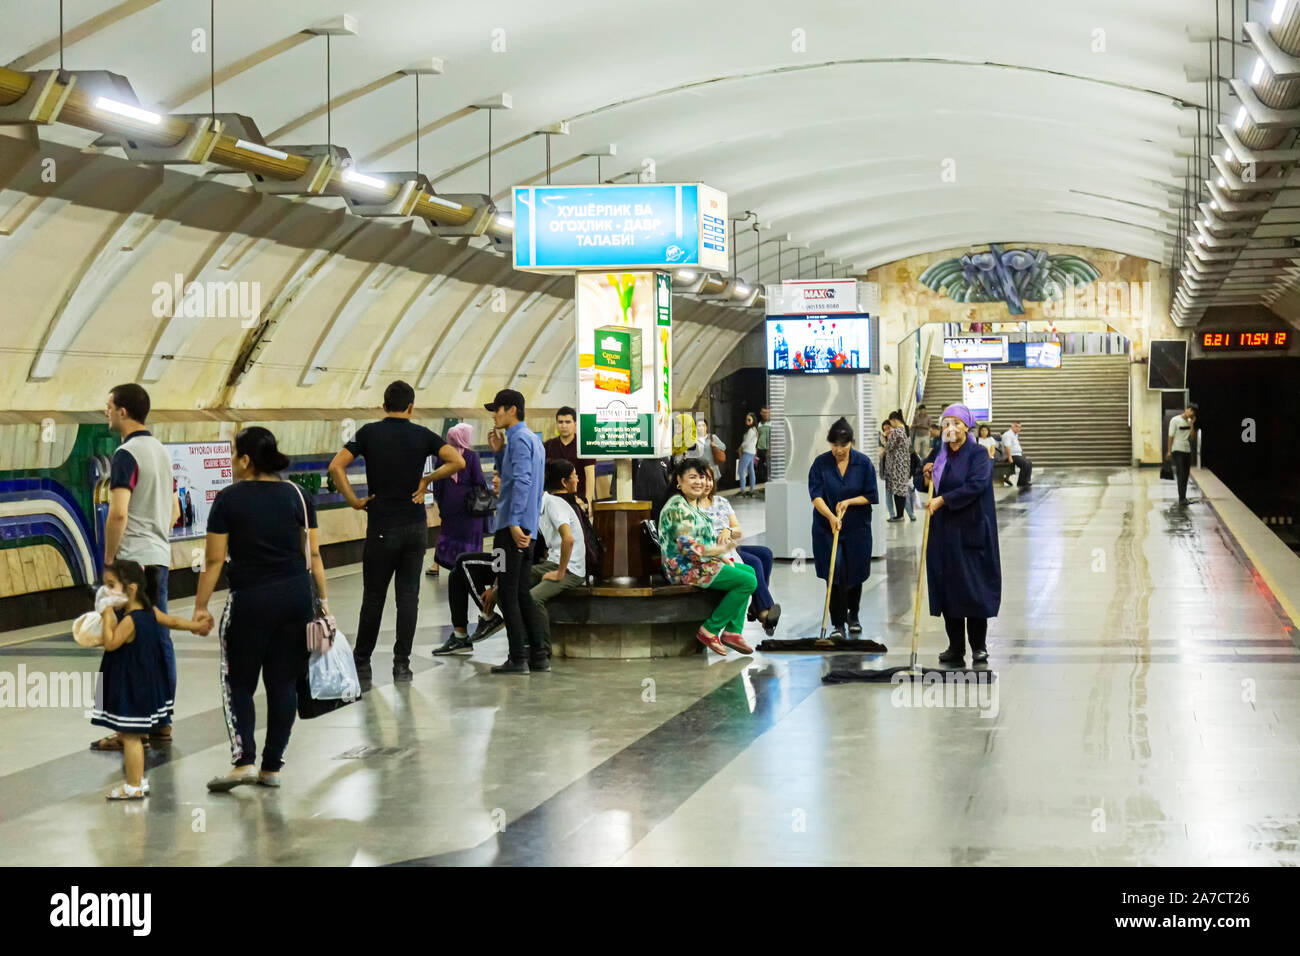 Deux femmes cleaners sweep la plate-forme à Tachkent comme un métro Chorus nombre de passagers assis ou debout autour d'attente pour un train d'arriver Banque D'Images